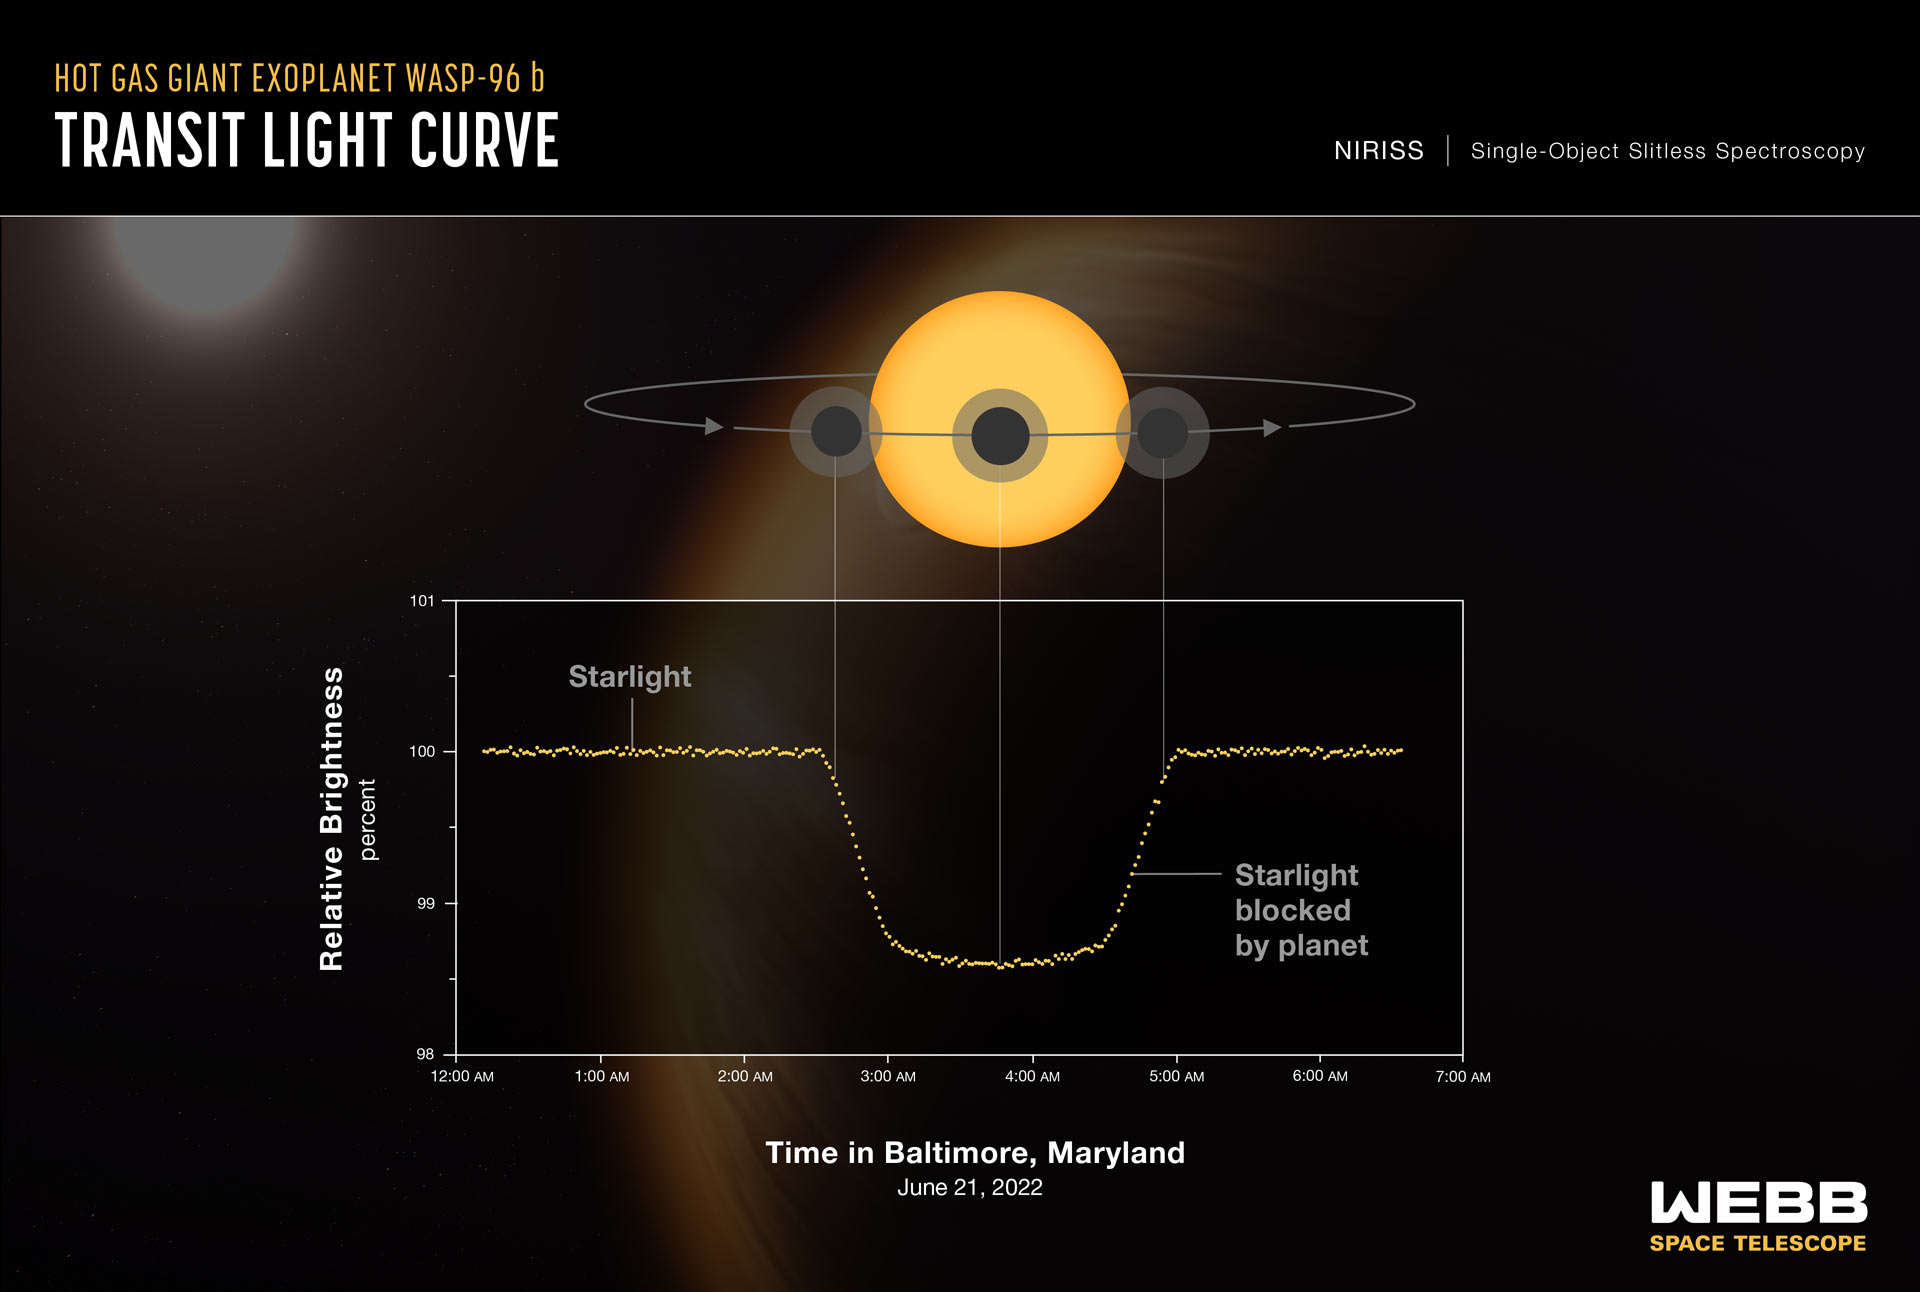 James Webbs syn på hvordan lyset krummer seg under en planets transitt over en stjerne